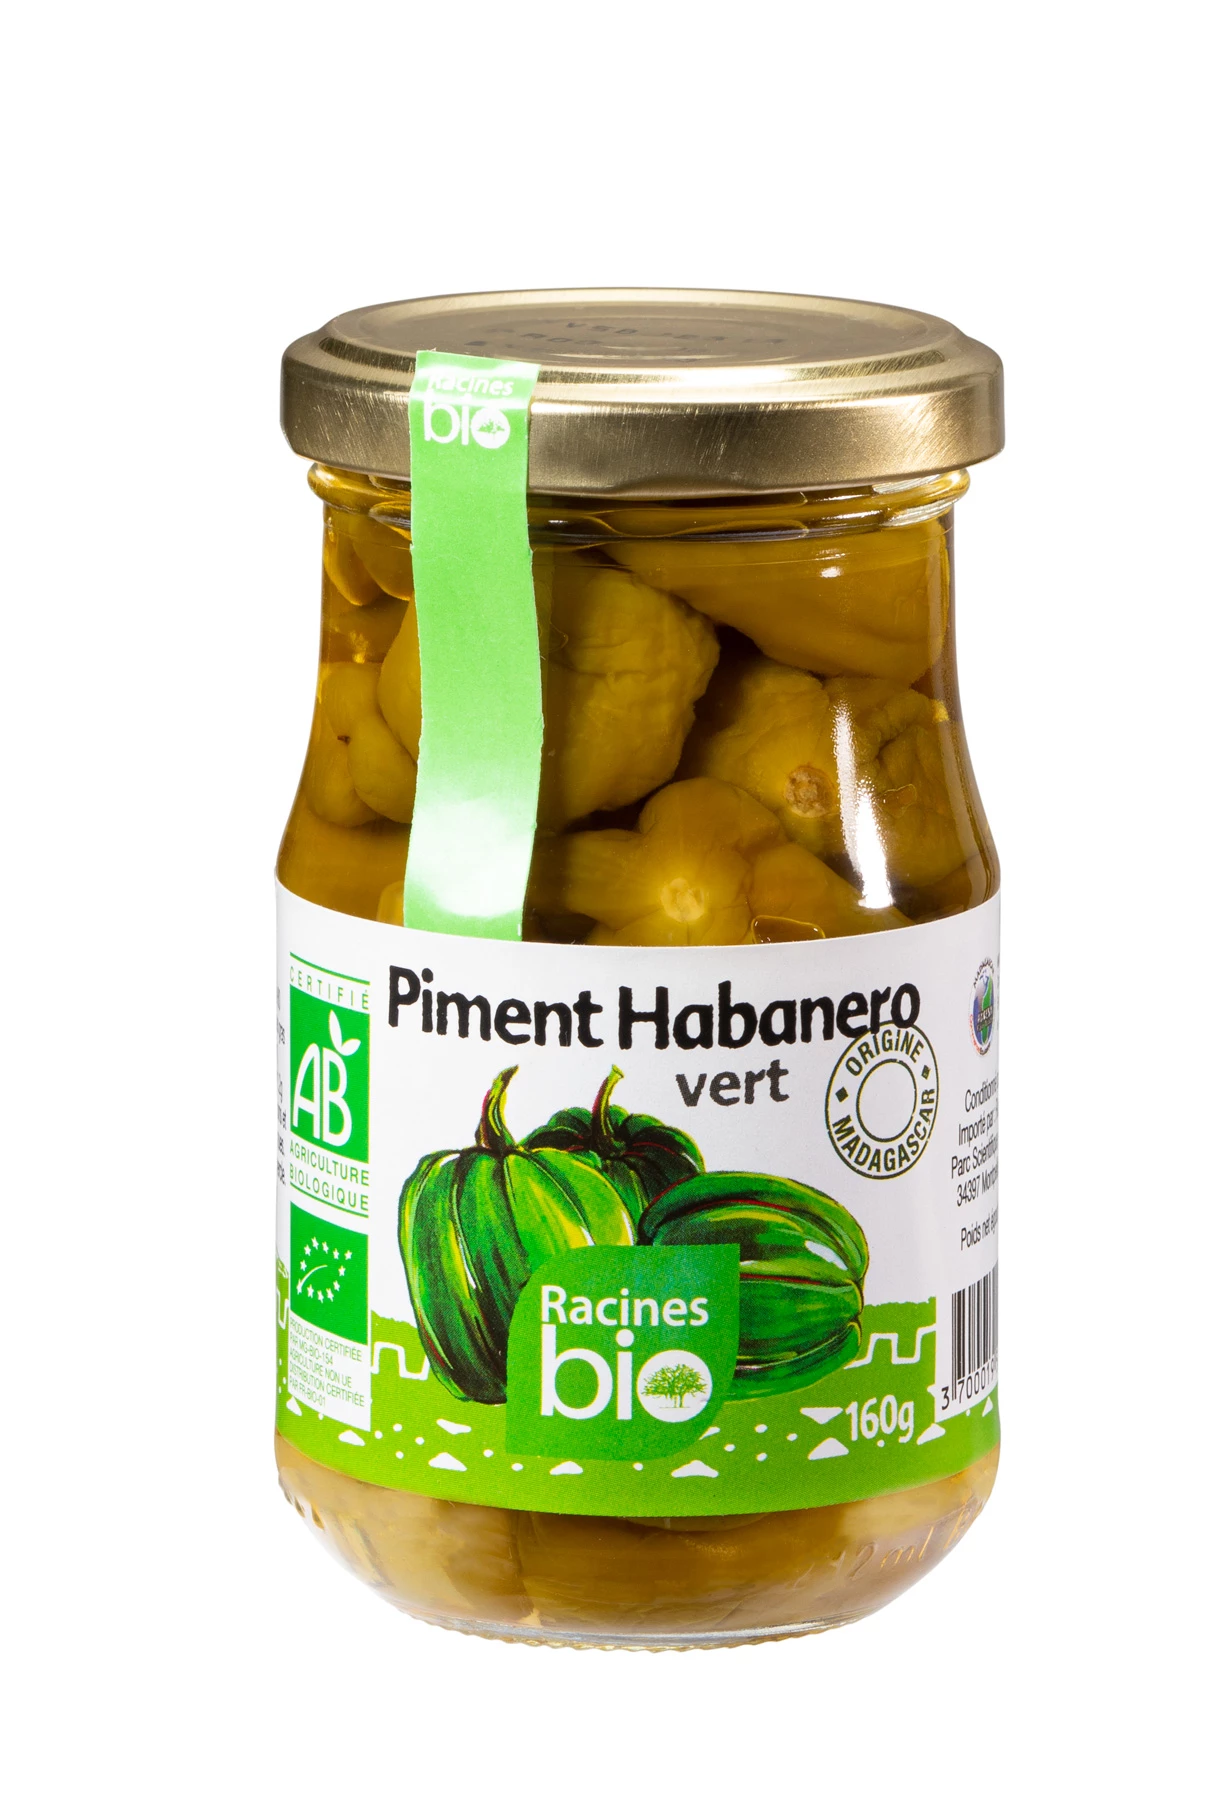 Piment Habanero Vert Entier (12 X 160 G) - Racines Bio